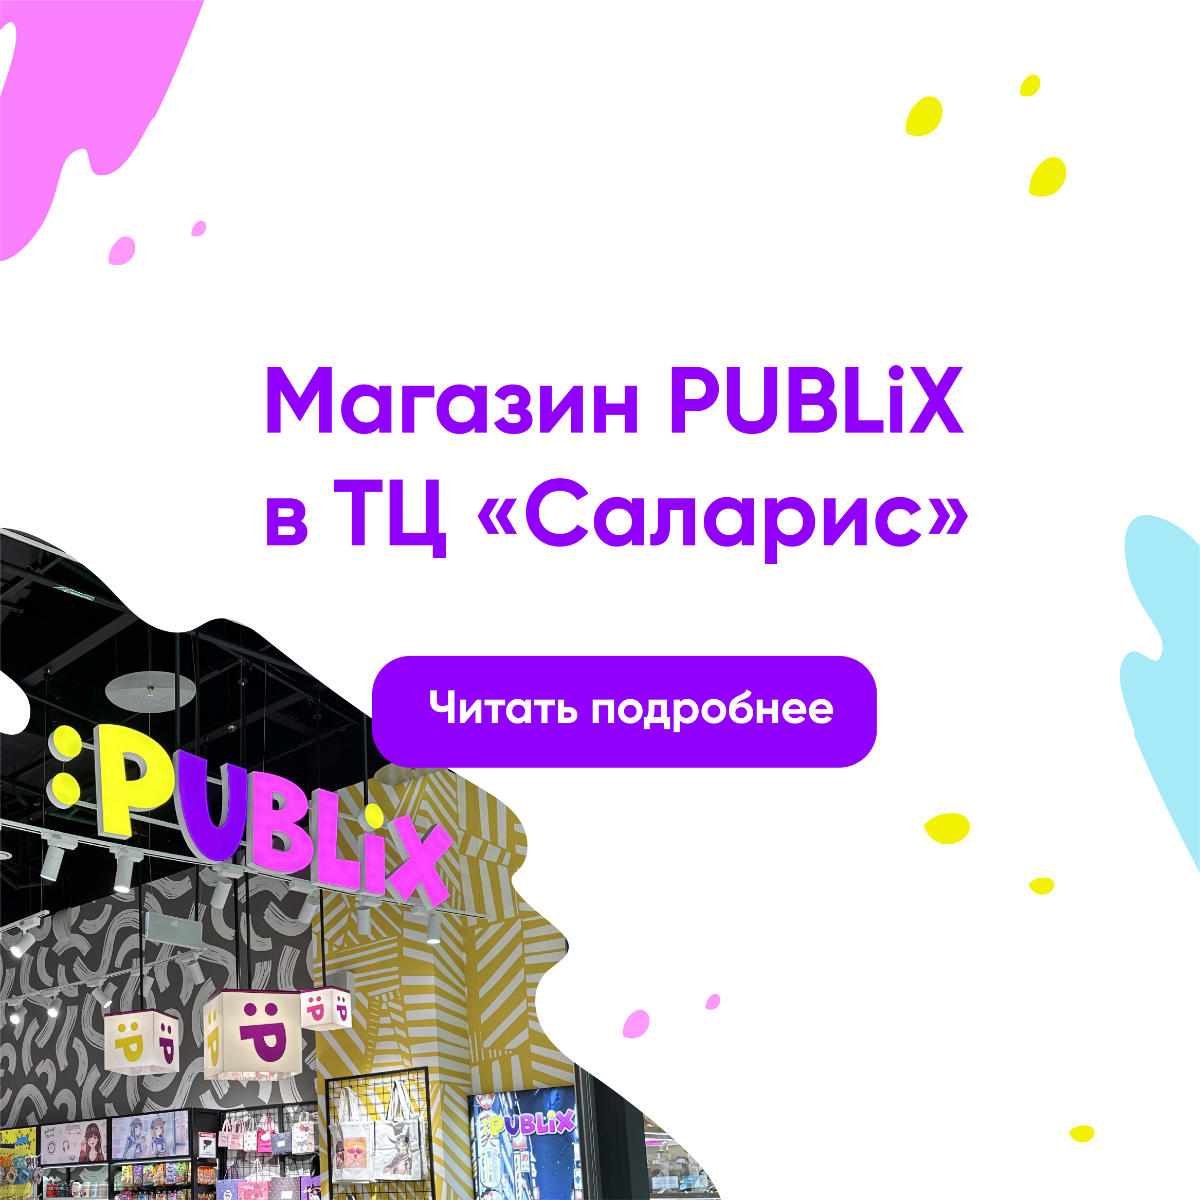 Открытие магазина PUBLiX